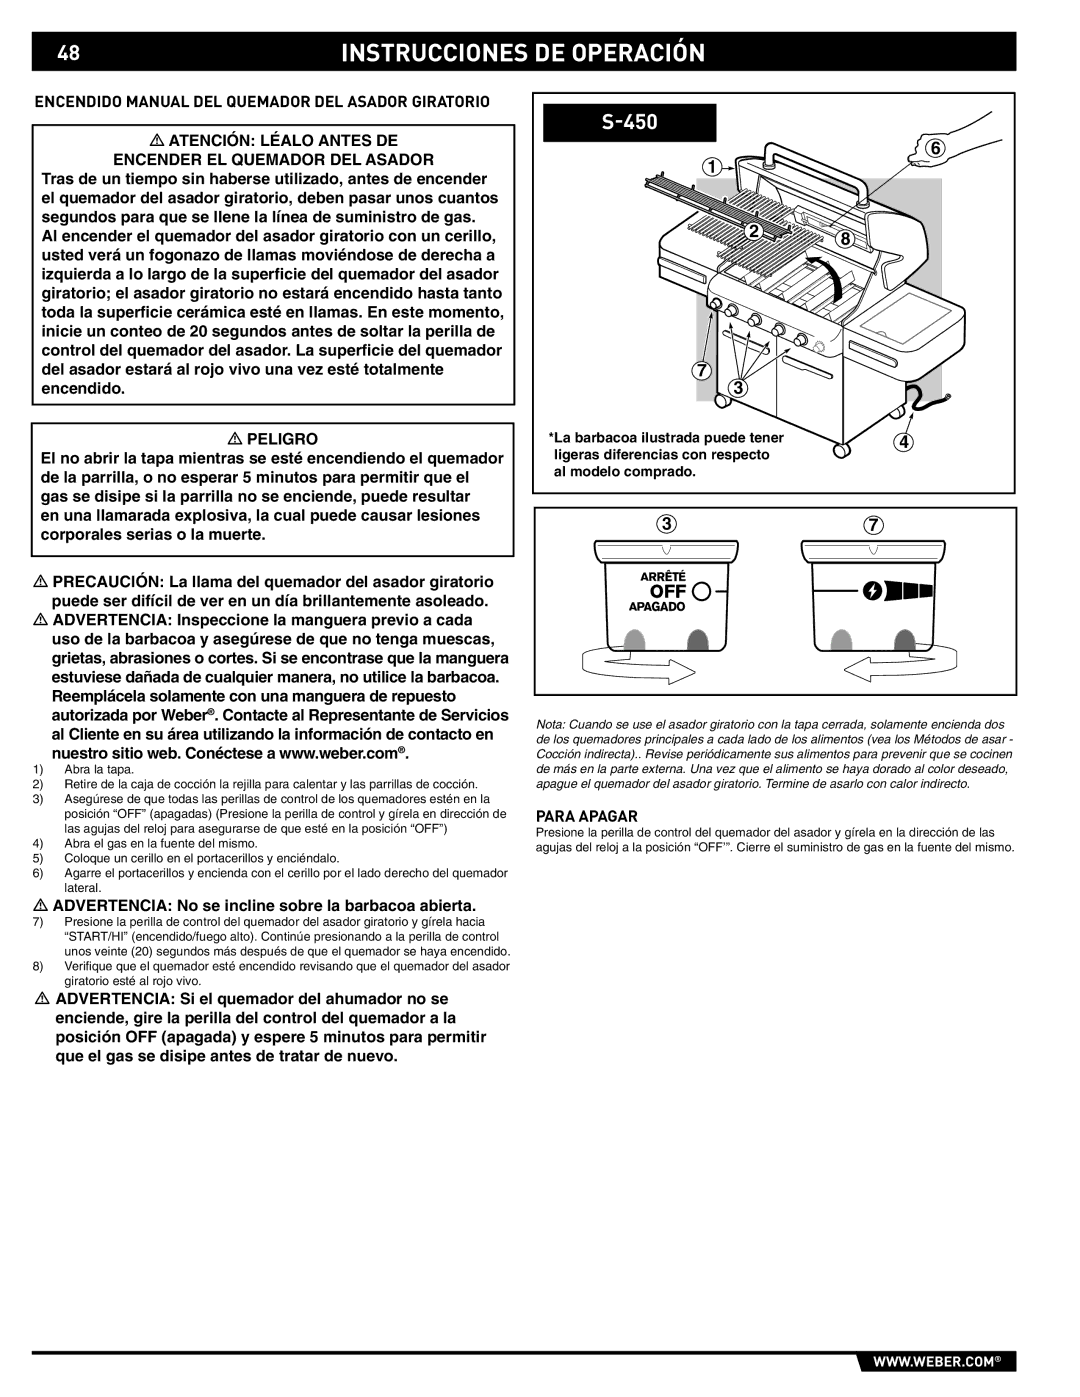 Weber 89561 manual Encendido Manual DEL Quemador DEL Asador Giratorio, La barbacoa ilustrada puede tener 